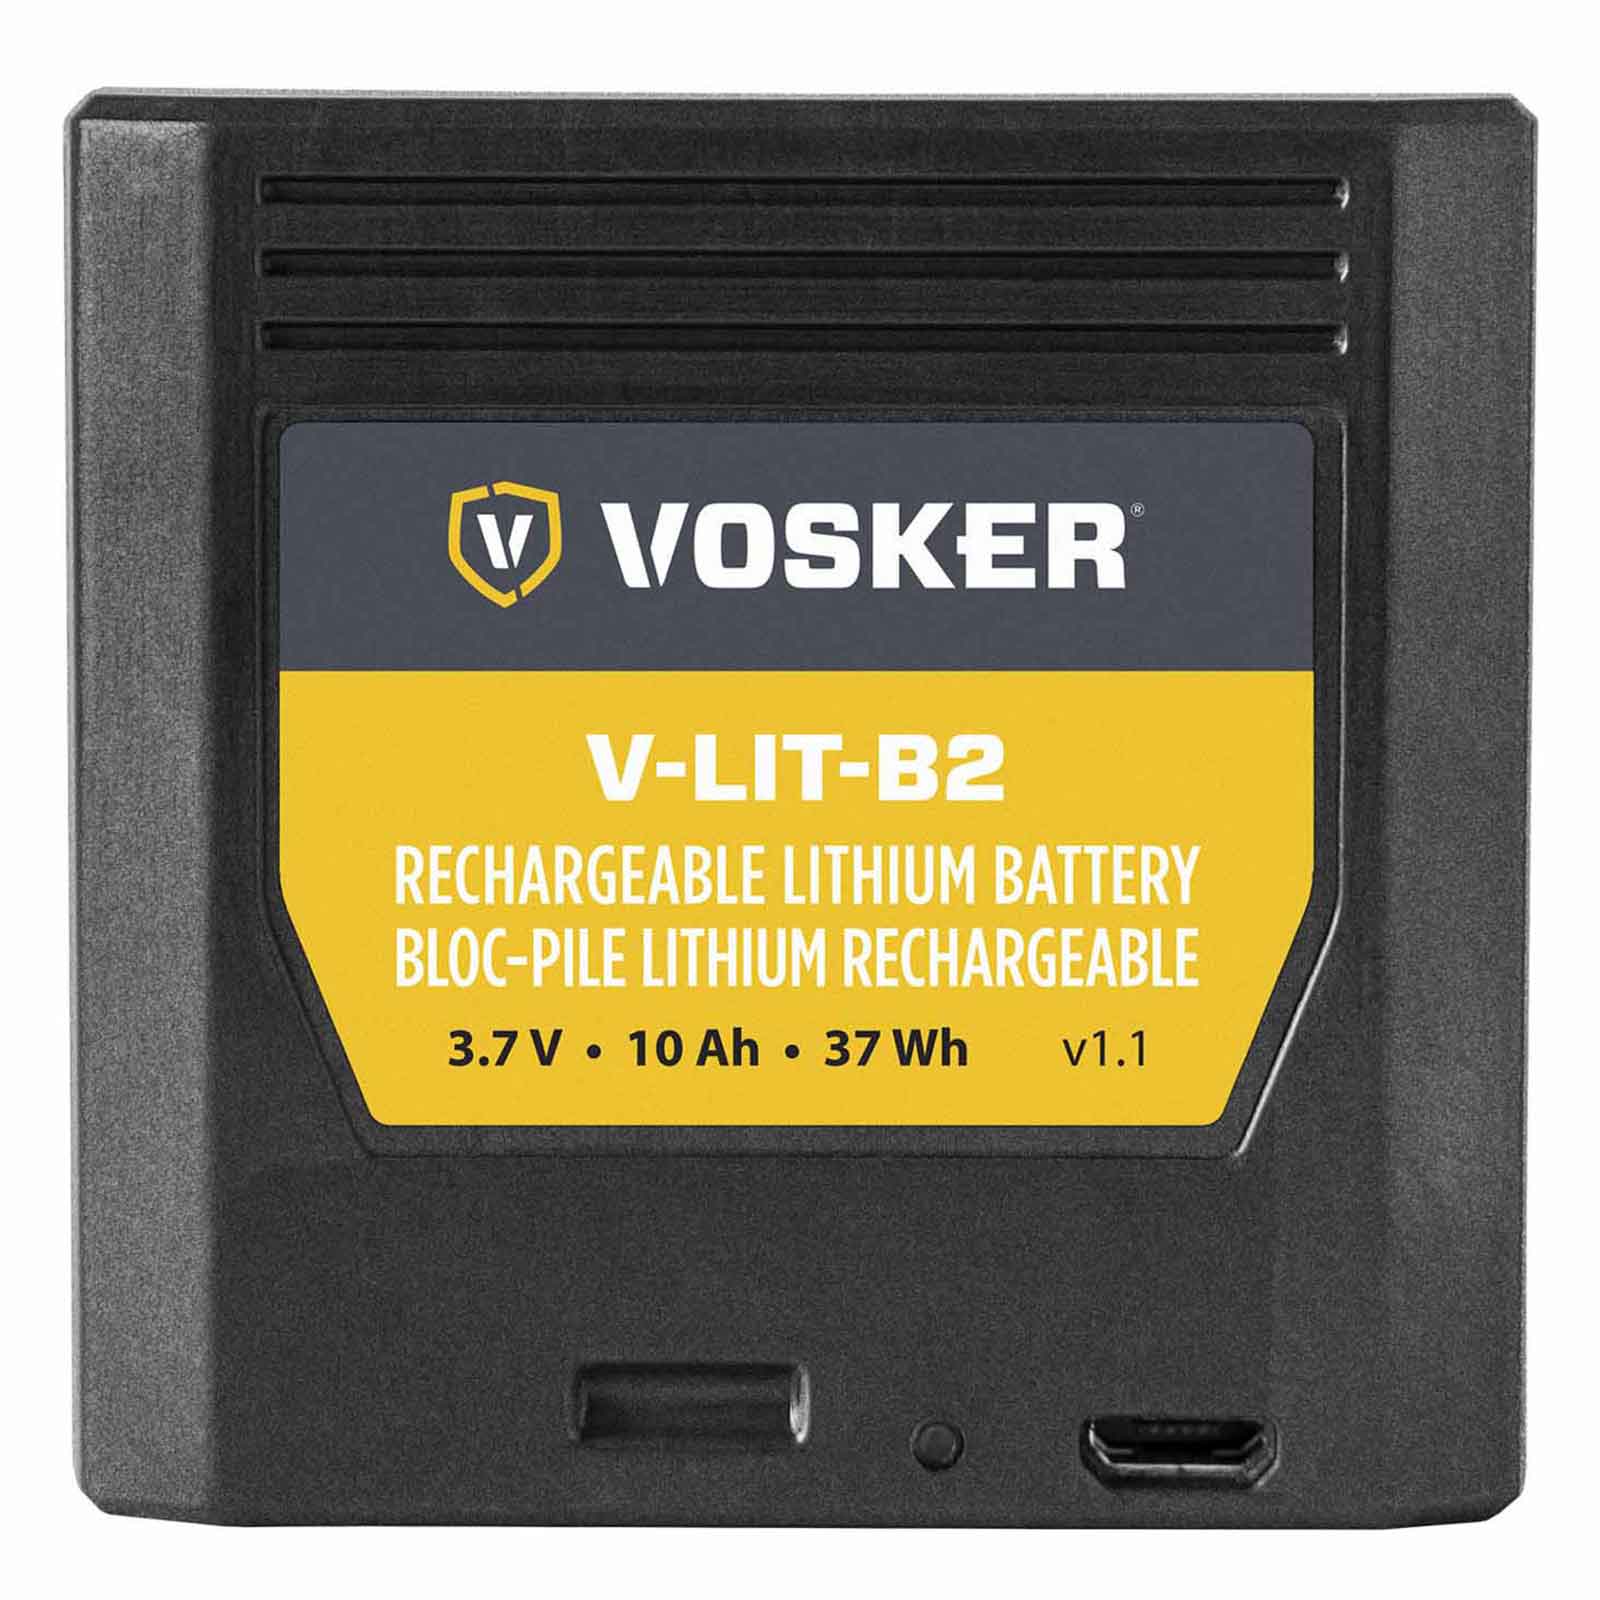 Vosker V-Lit-B2 Lithium Battery / Un3480